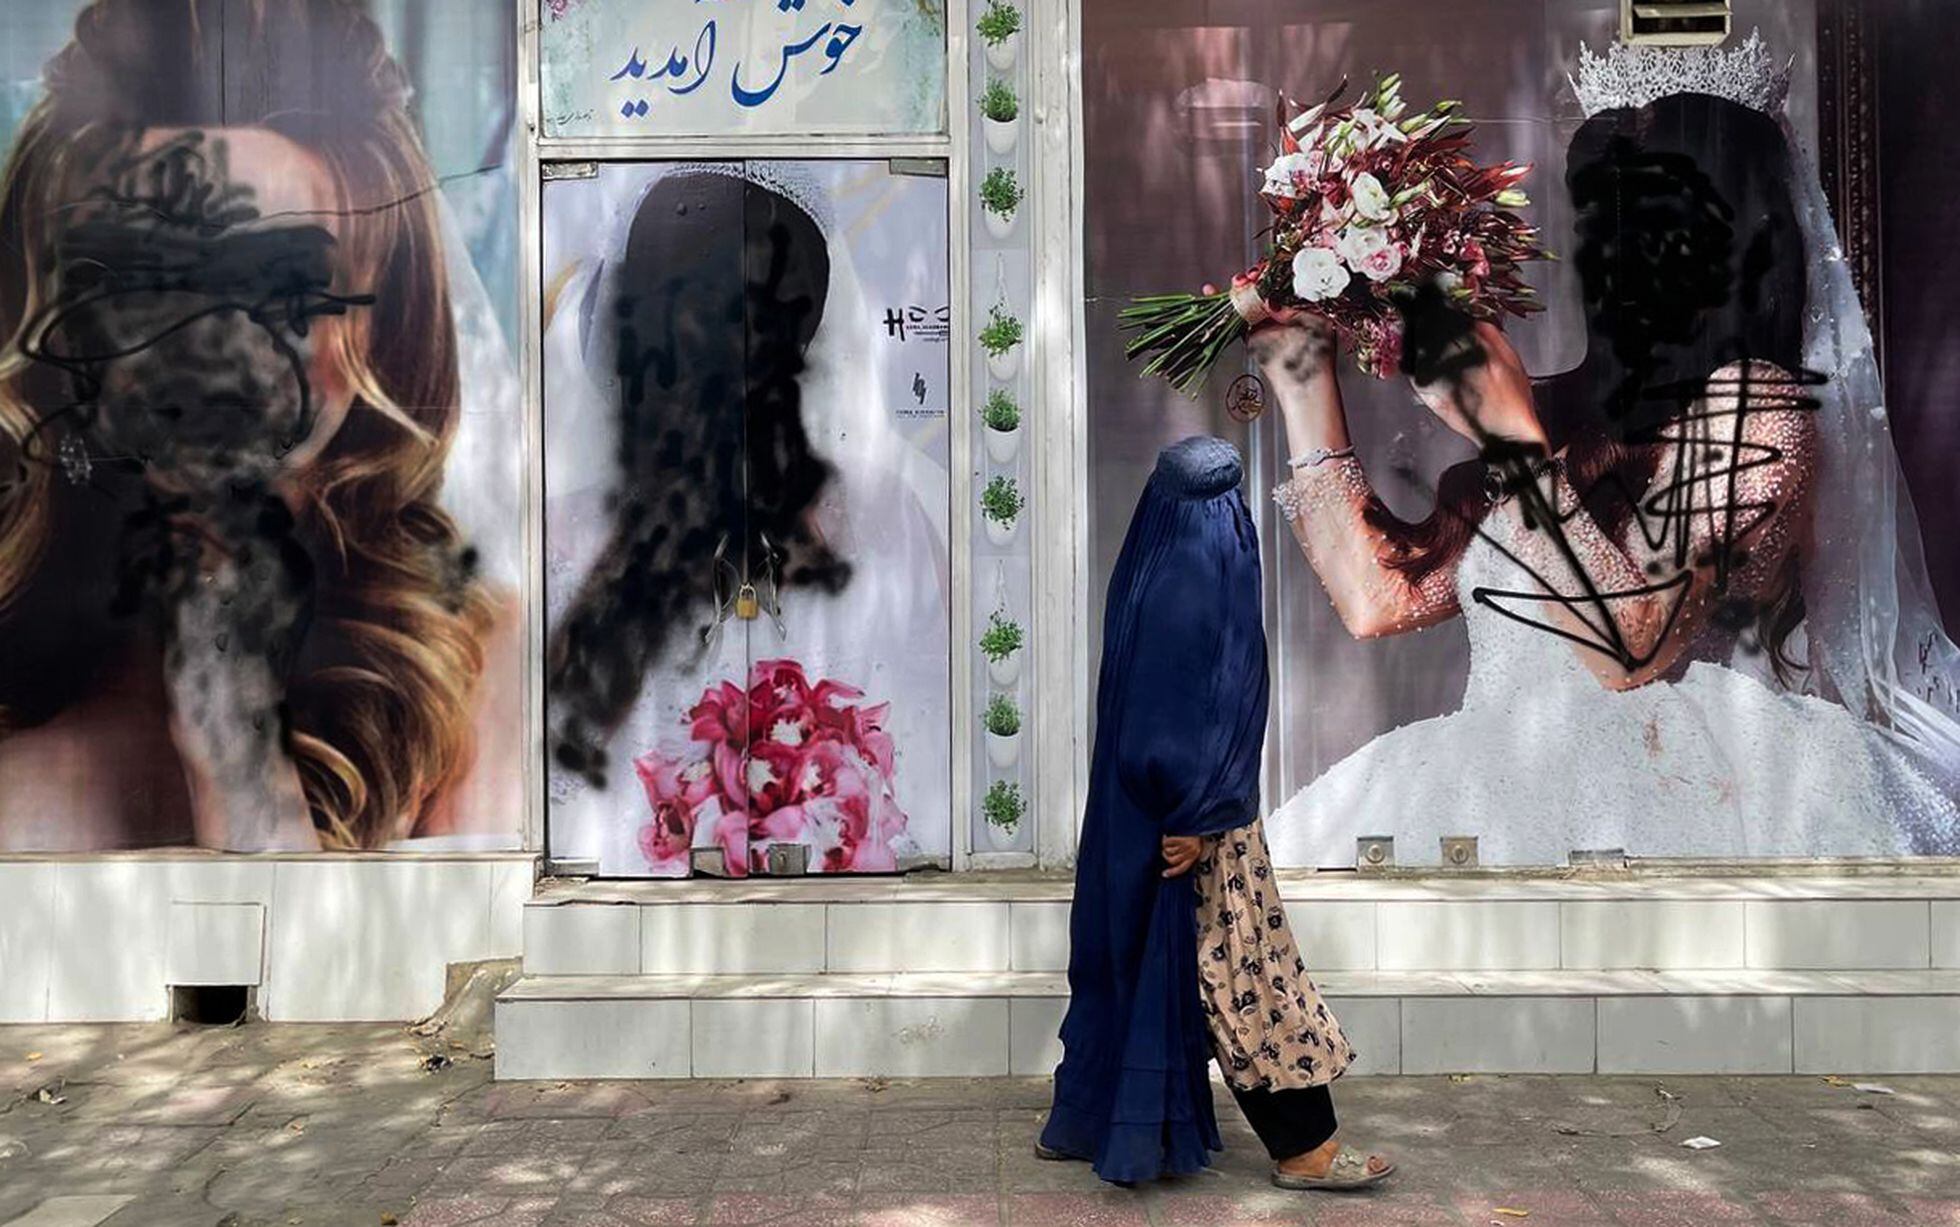 Una afgana ataviada con el burka pasa ante los carteles de un centro de belleza, vandalizados con pintura negra, el 20 de agosto de 2021 en Kabul.